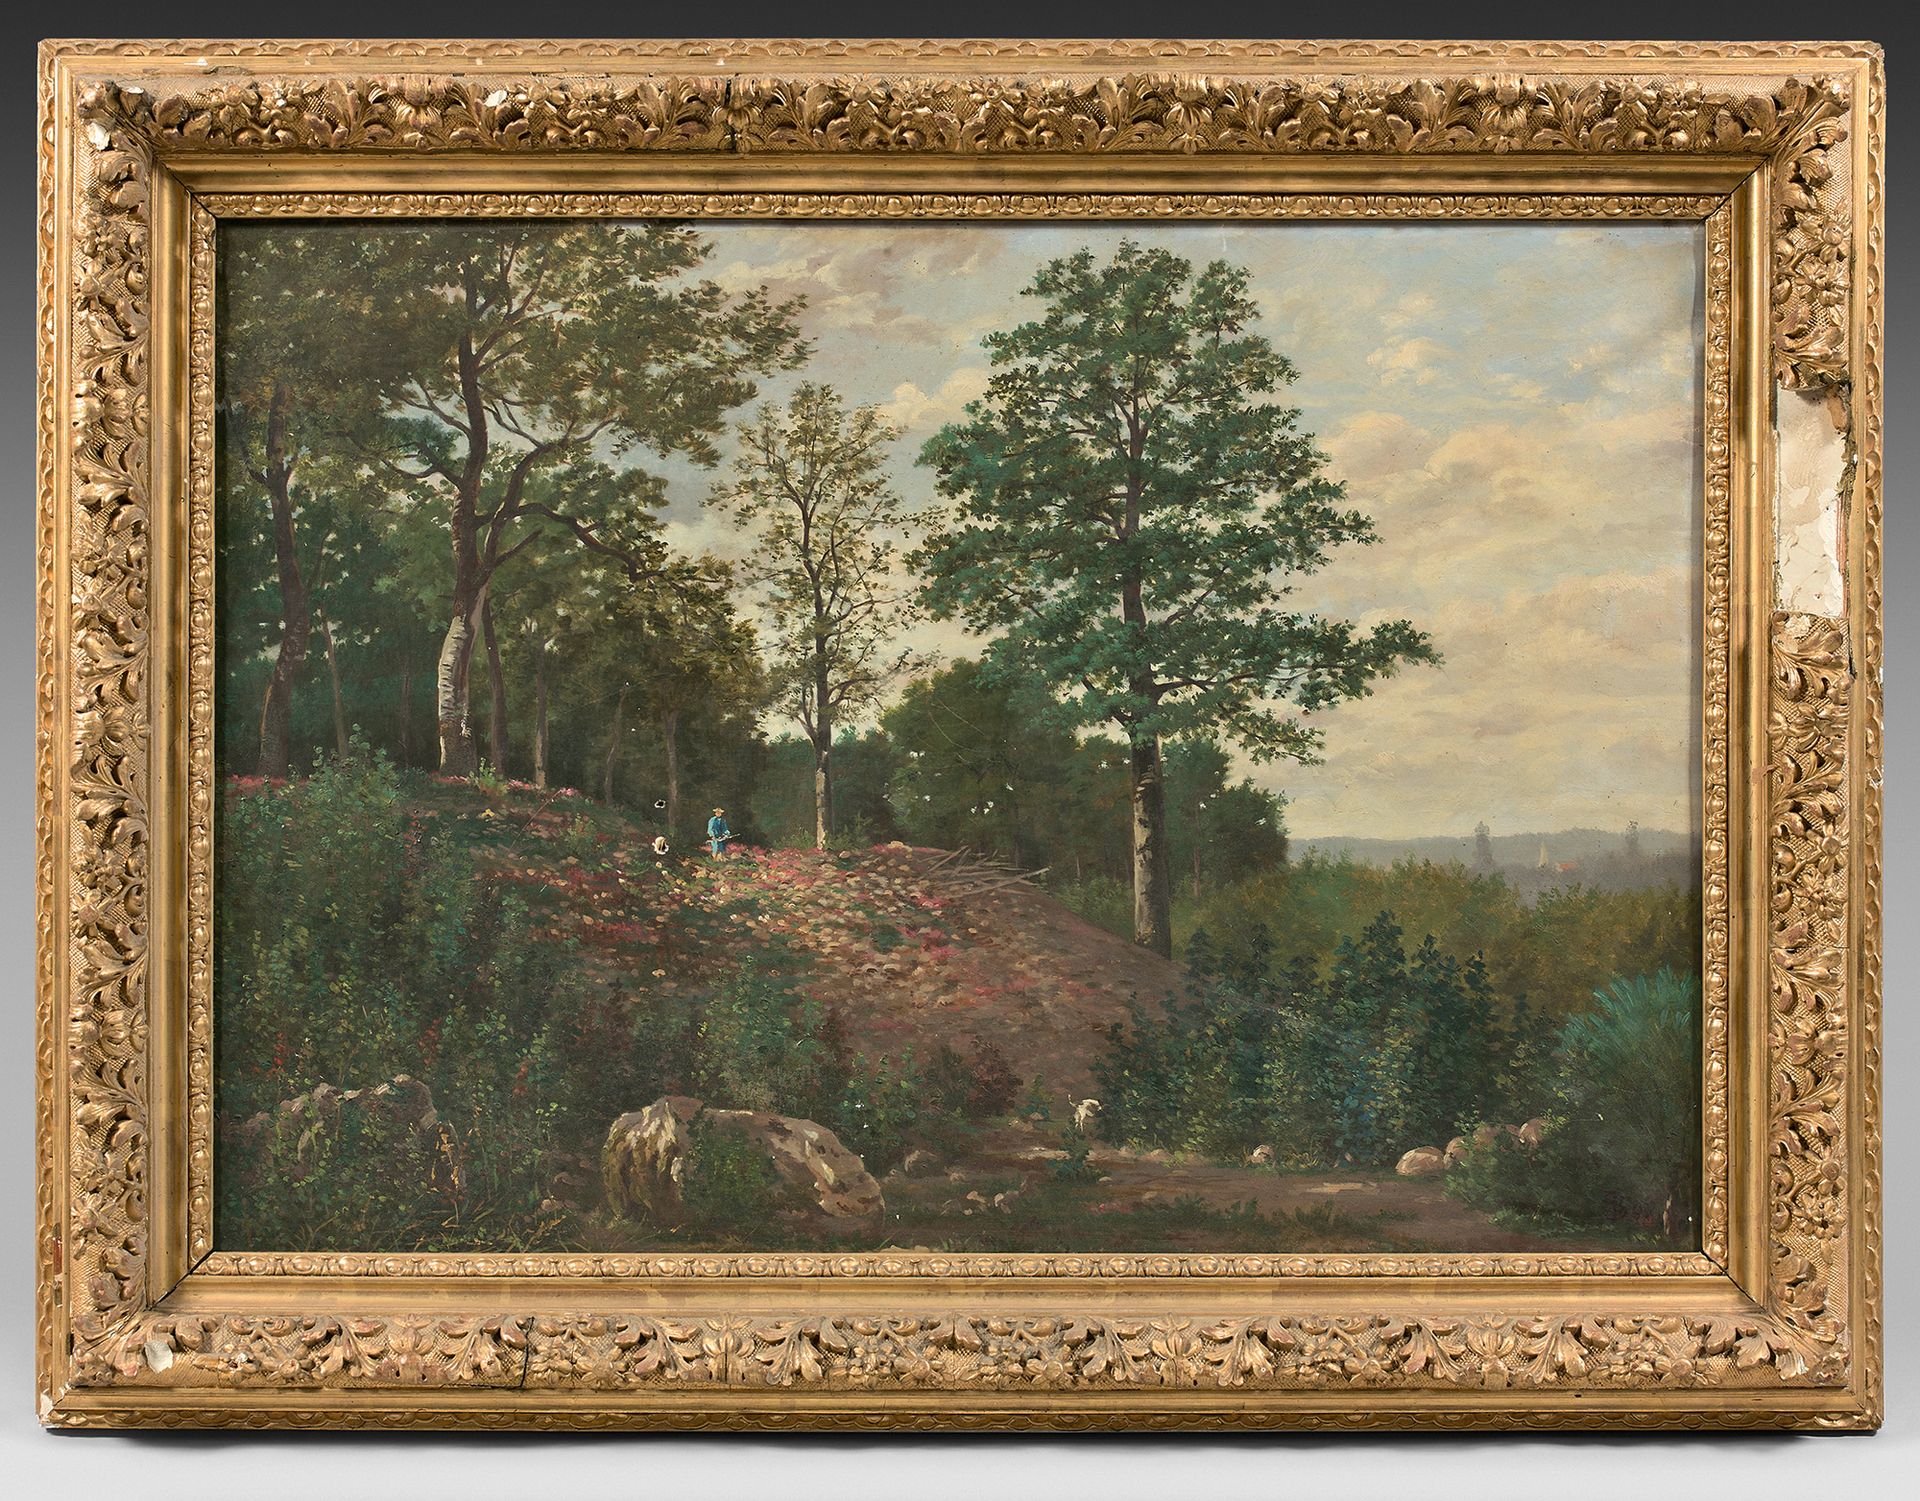 École PROVENÇALE vers 1860 Landscape of forest
Canvas.
57 x 82 cm
Accidents.